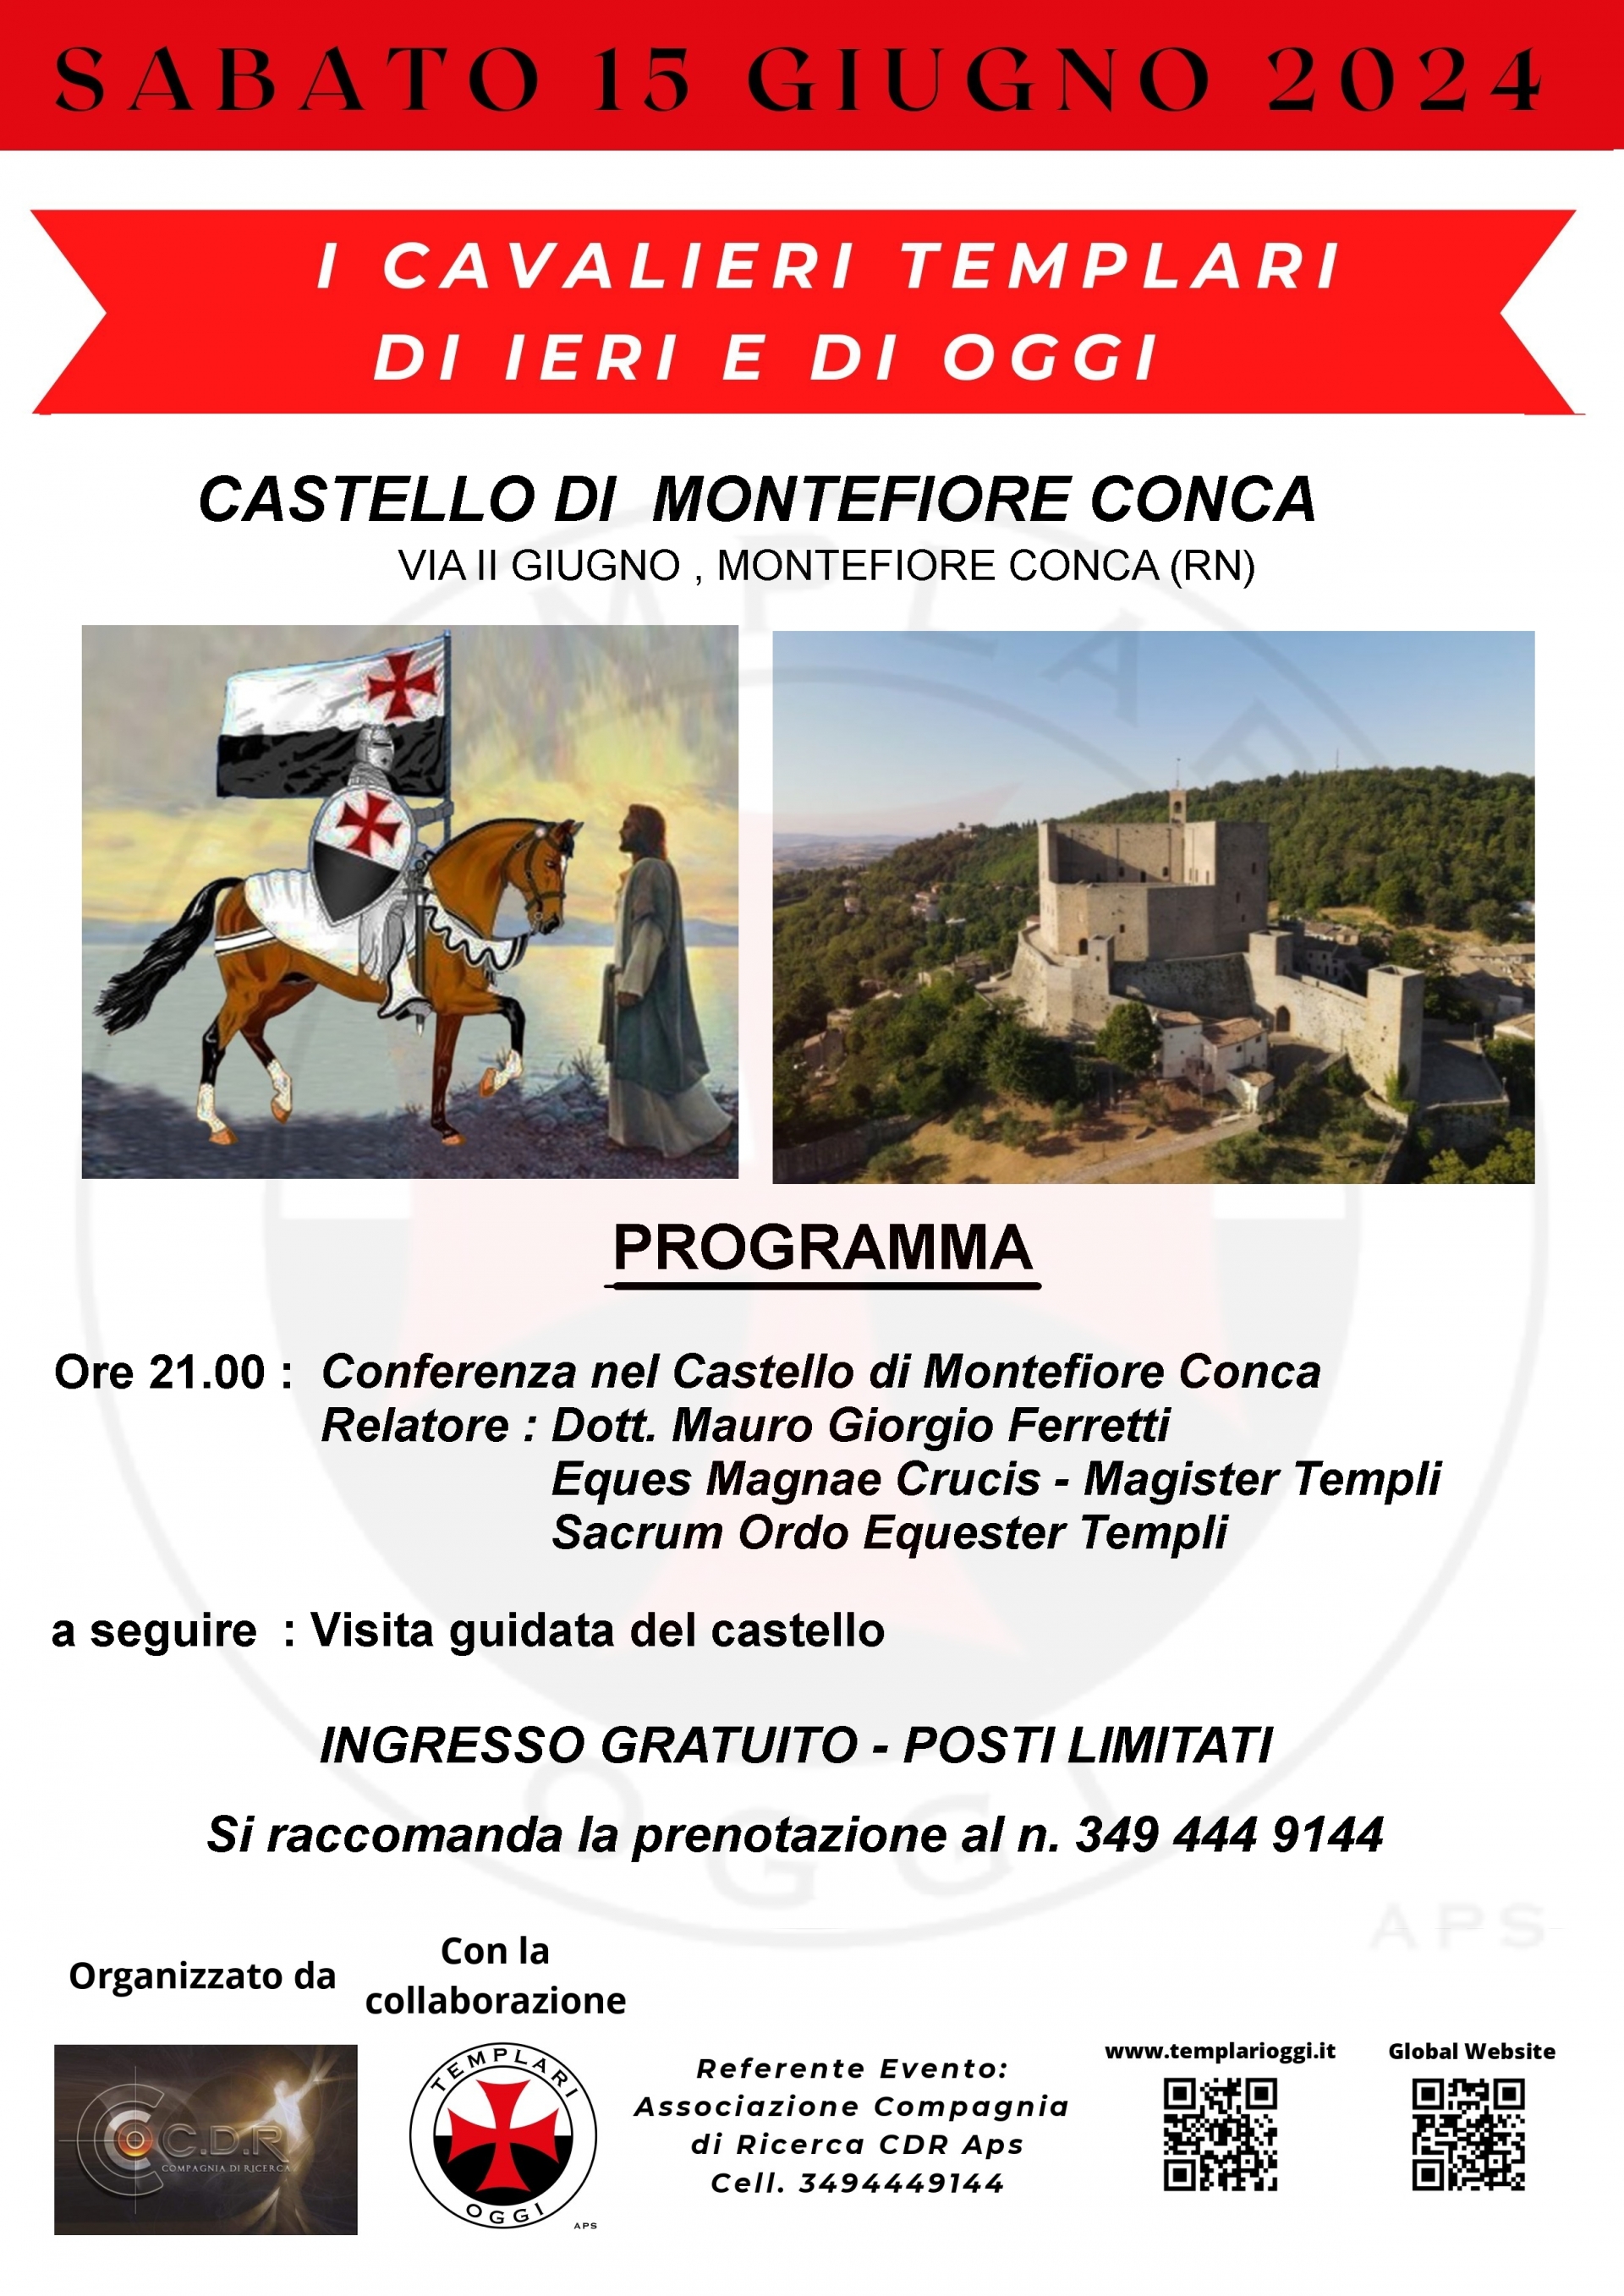 I CAVALIERI TEMPLARI DI IERI E DI OGGI foto di castello di Montefiore Conca